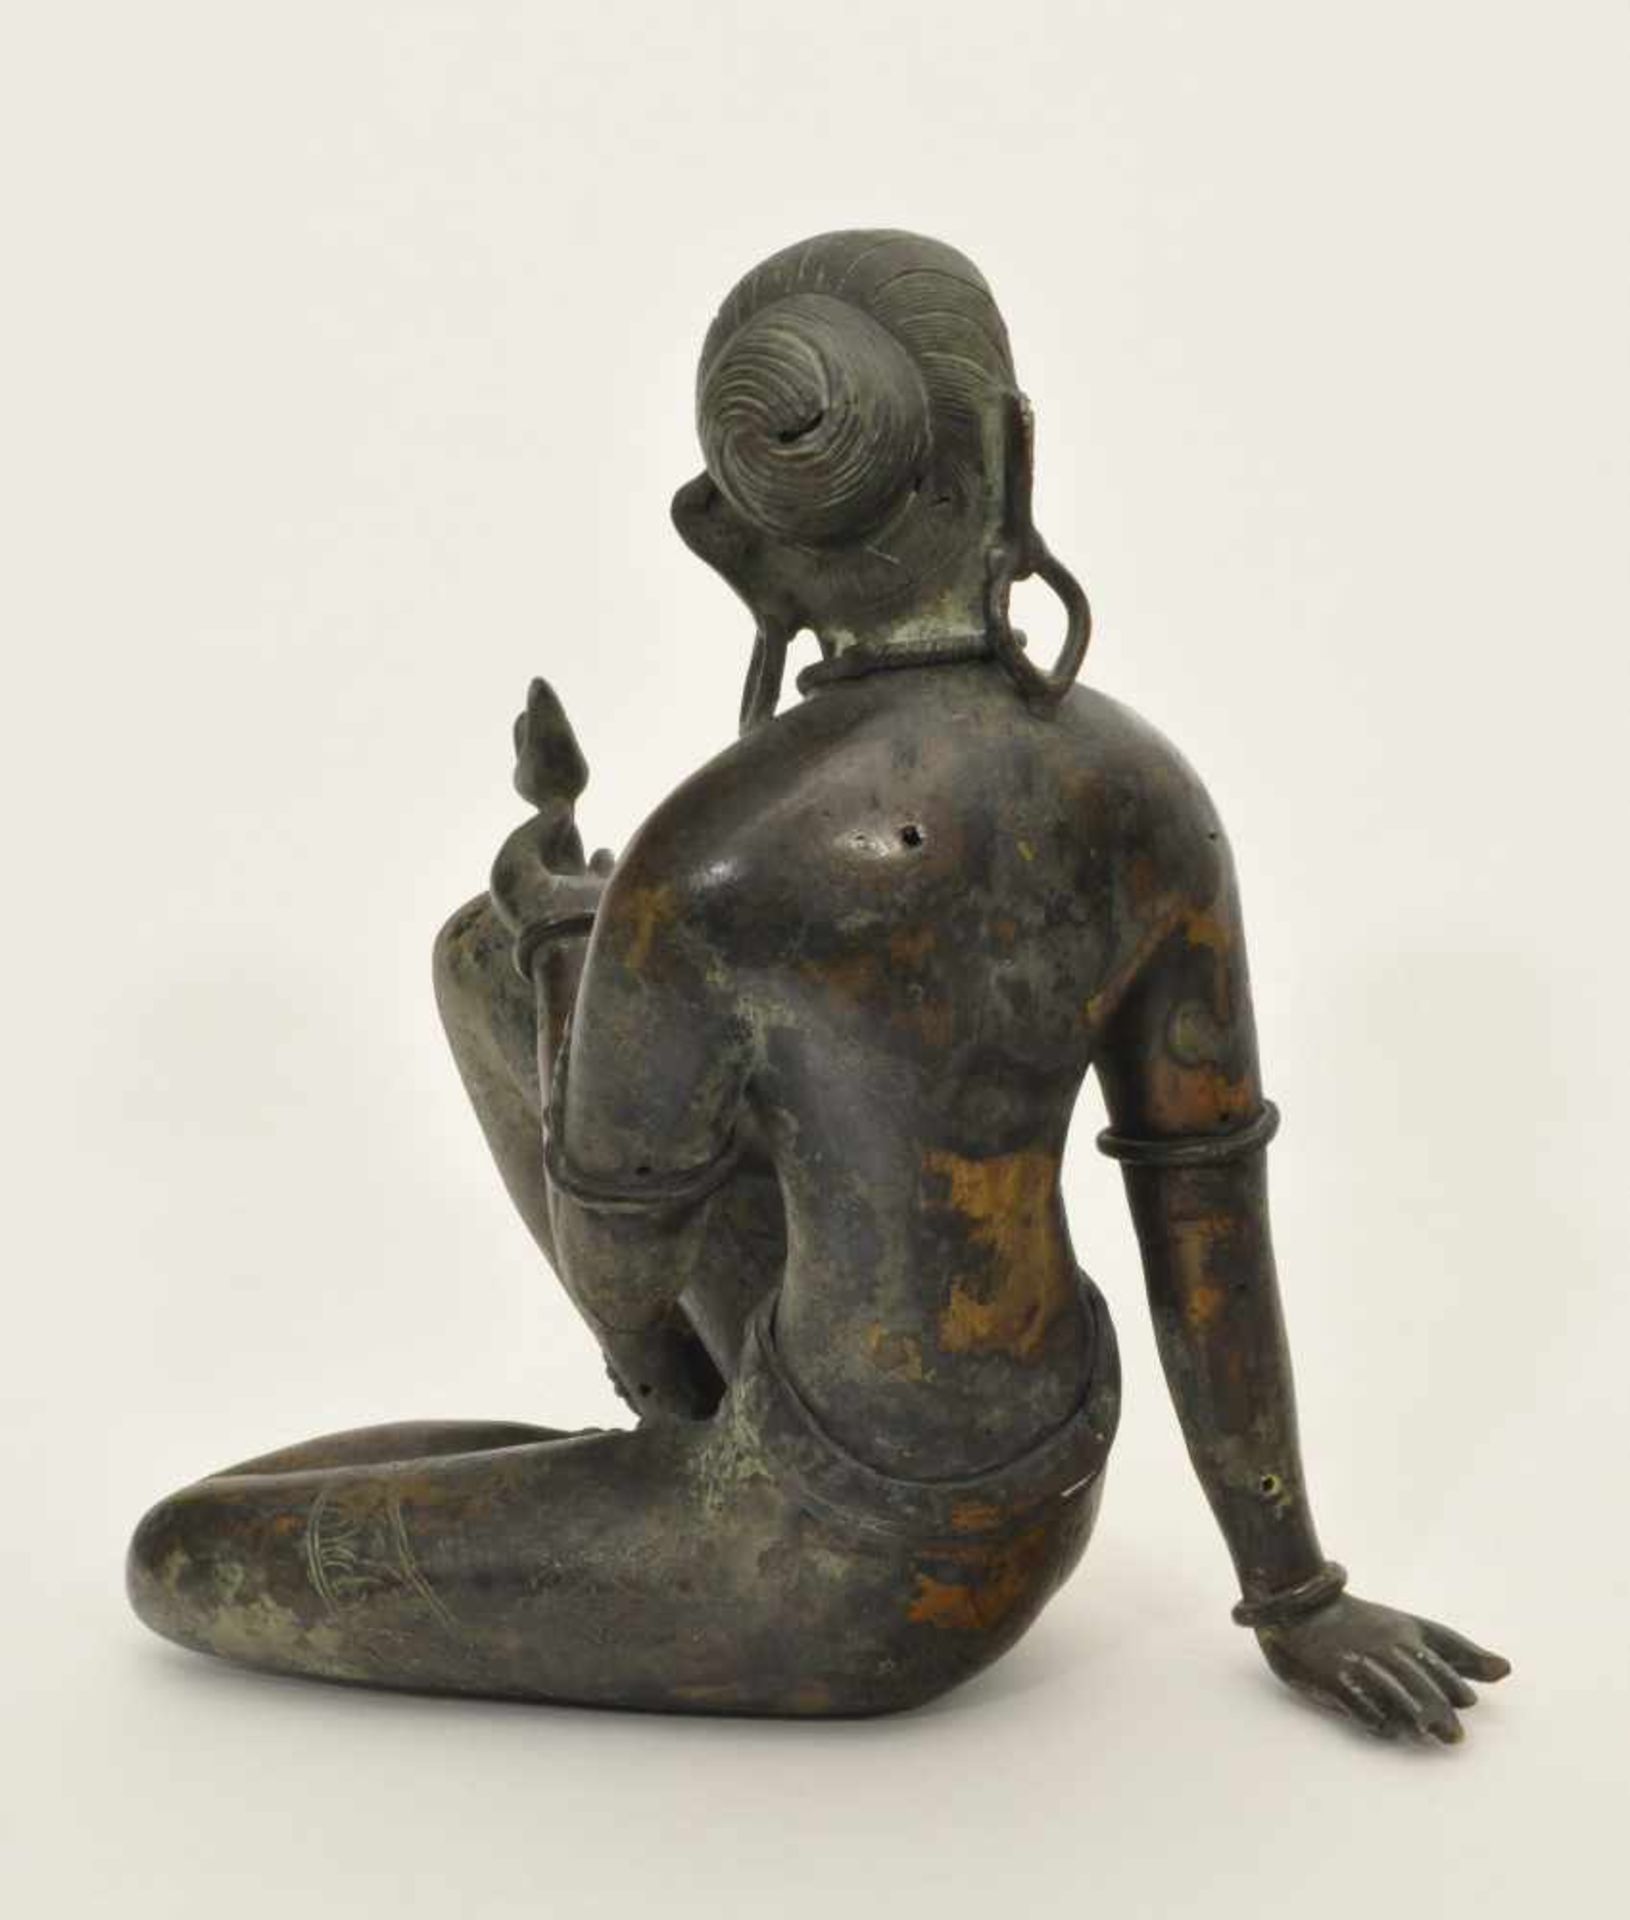 Sitzende Tempeltänzerin Bronze, Indien, 19. Jh., feine Ziselierungen, Patina, H. 22,0 cm - Bild 3 aus 4